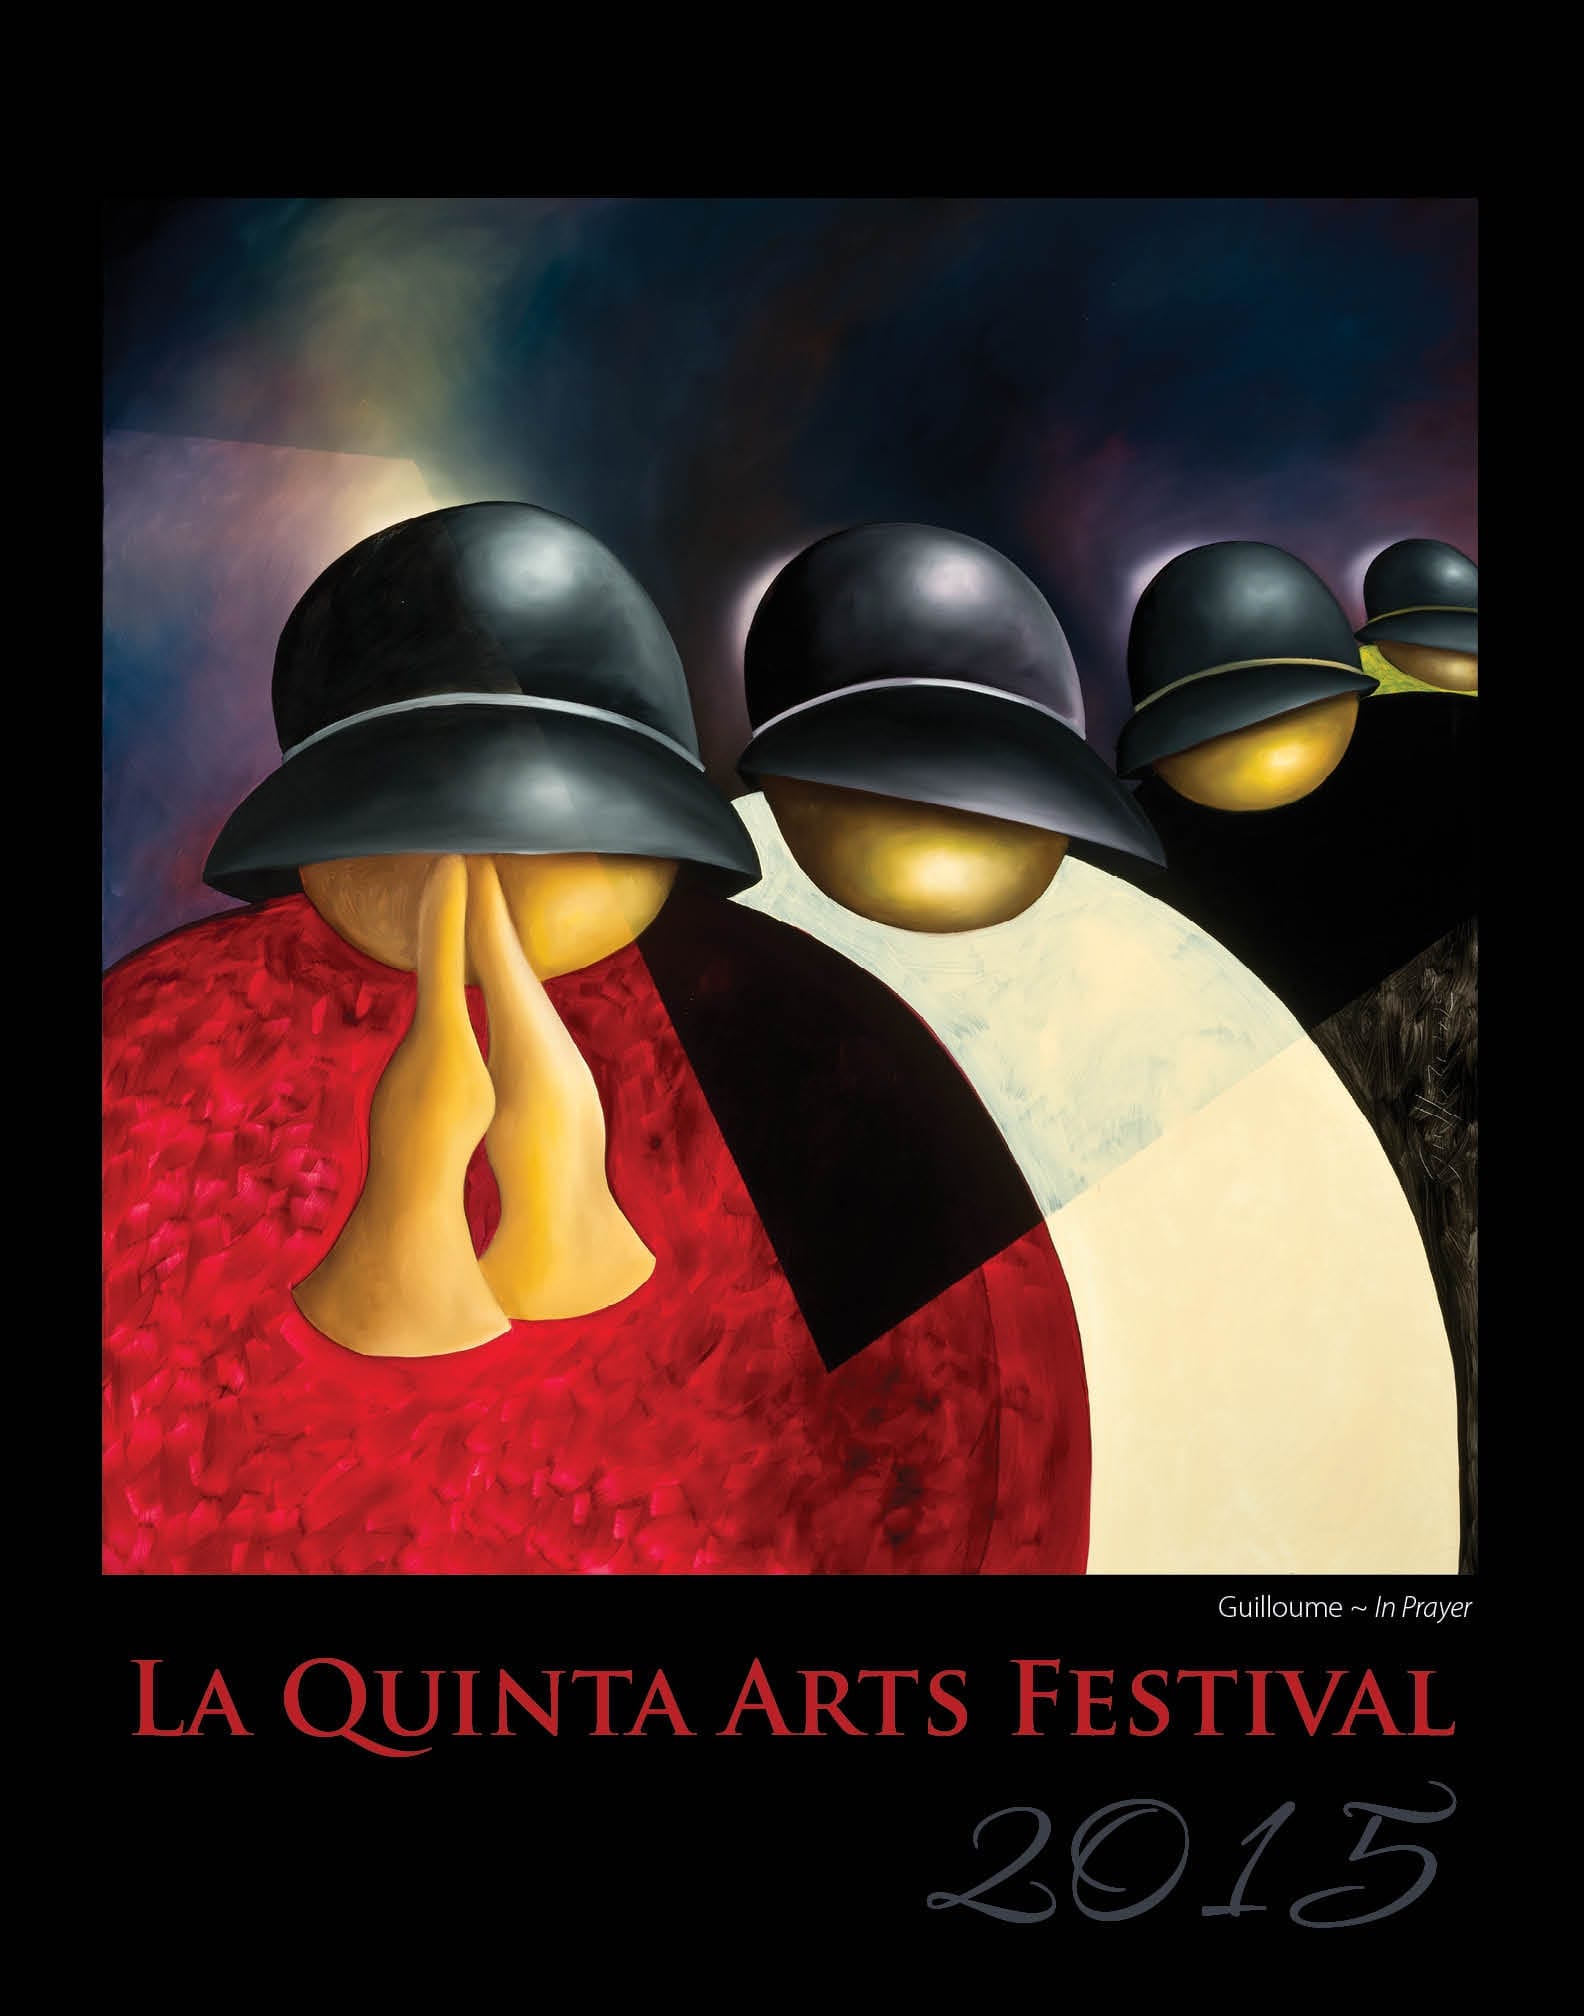 2015 La Quinta Arts Festival Poster